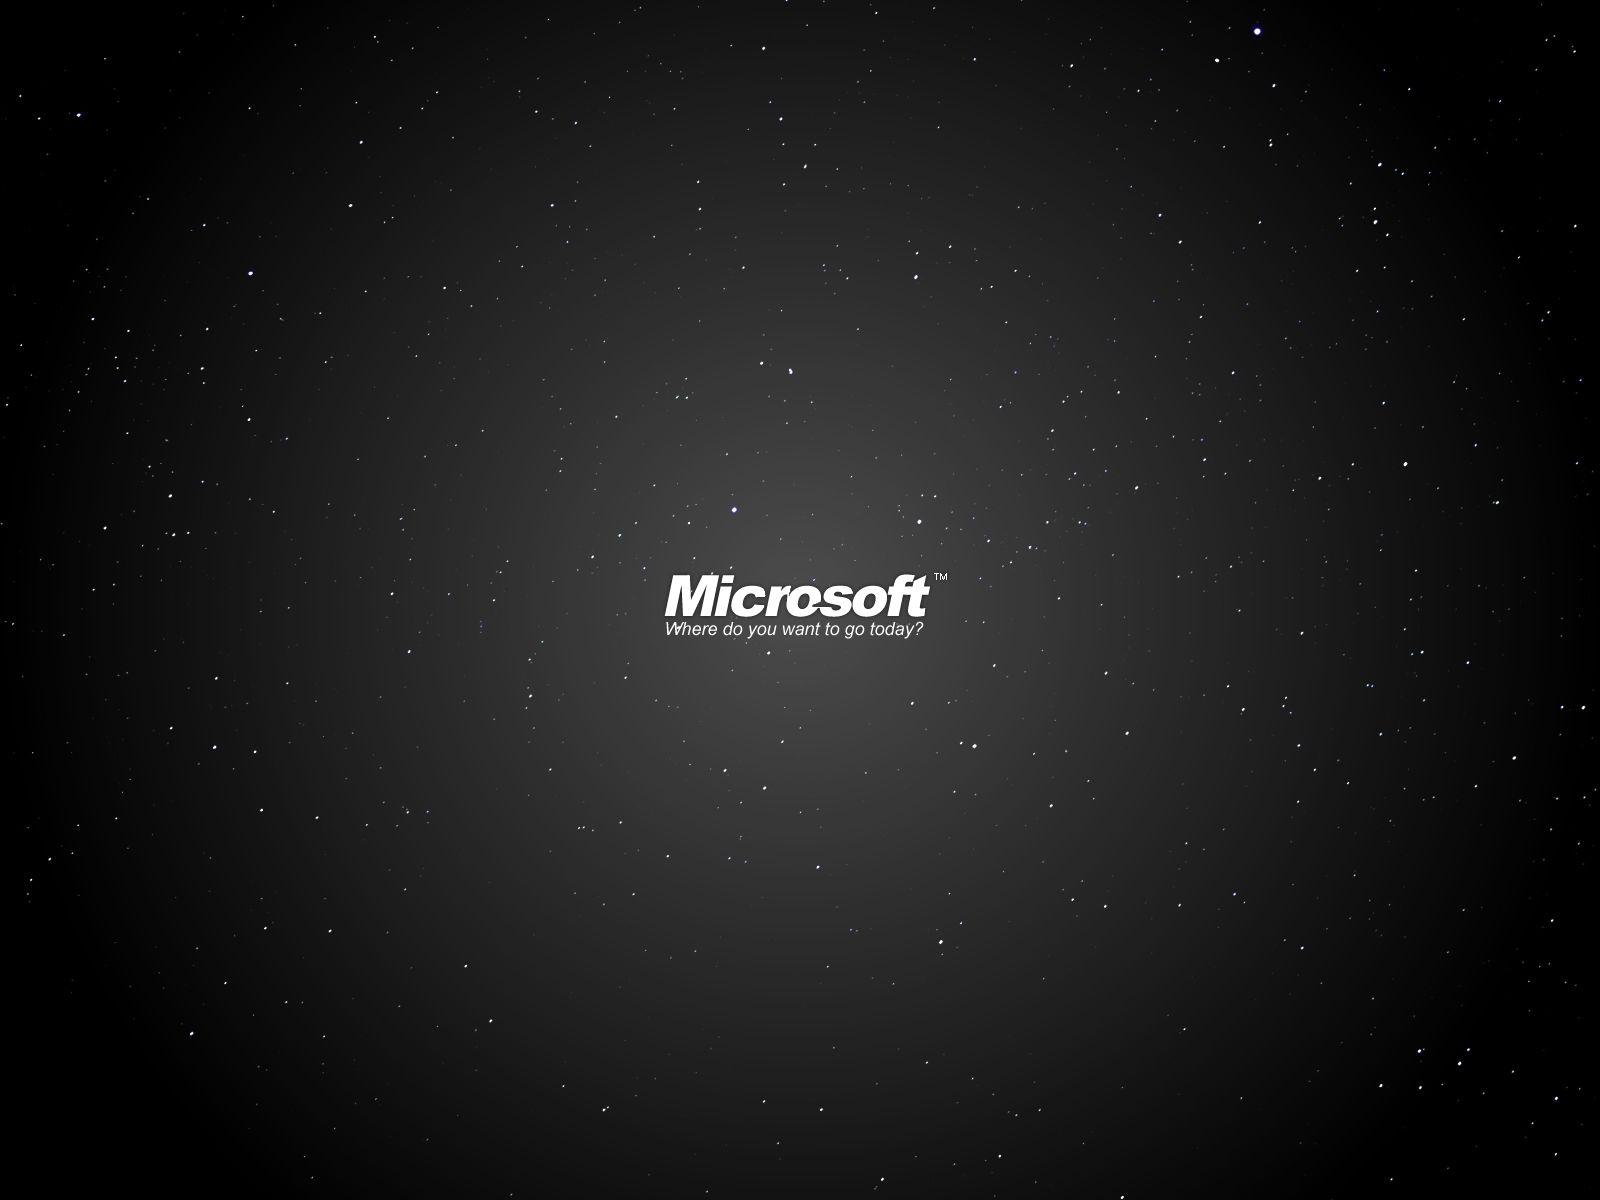 Free Microsoft Desktop Wallpaper